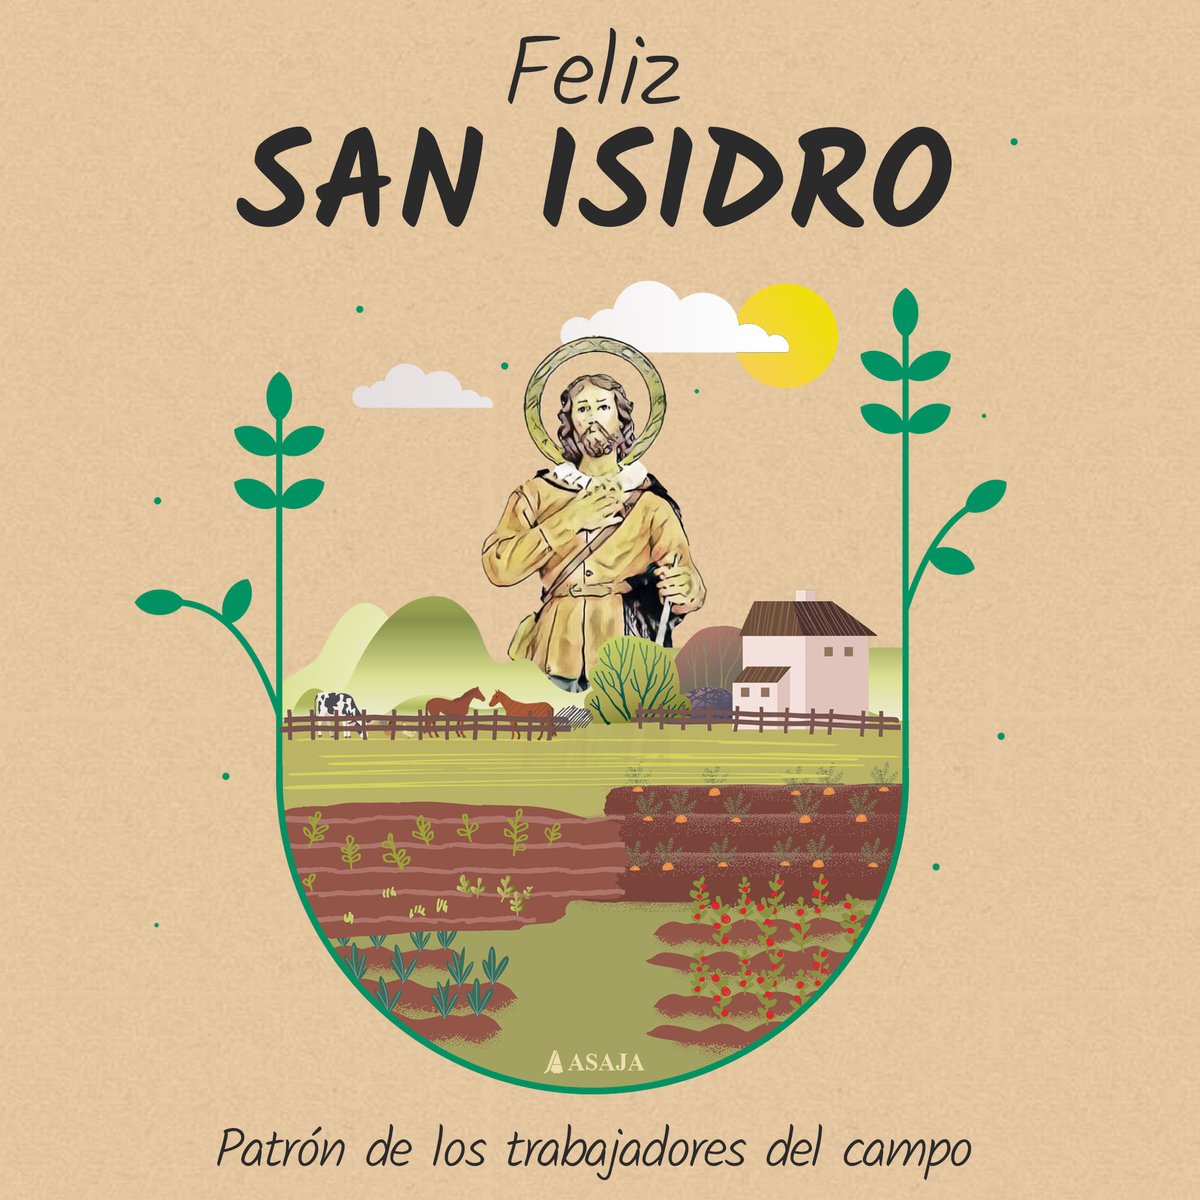 ¡Feliz Día de San Isidro! 🌾🐮 Un 👏 aplauso a todos nuestros incansables 👨‍🌾 #agricultores y 👩‍🌾 #ganaderos que, día tras día, aseguran alimentos de primera en nuestras mesas. Vuestra dedicación moldea el futuro de nuestra tierra🍇🍏 #DíadeSanIsidro #SanIsidro24 #DíadeSanIsidro